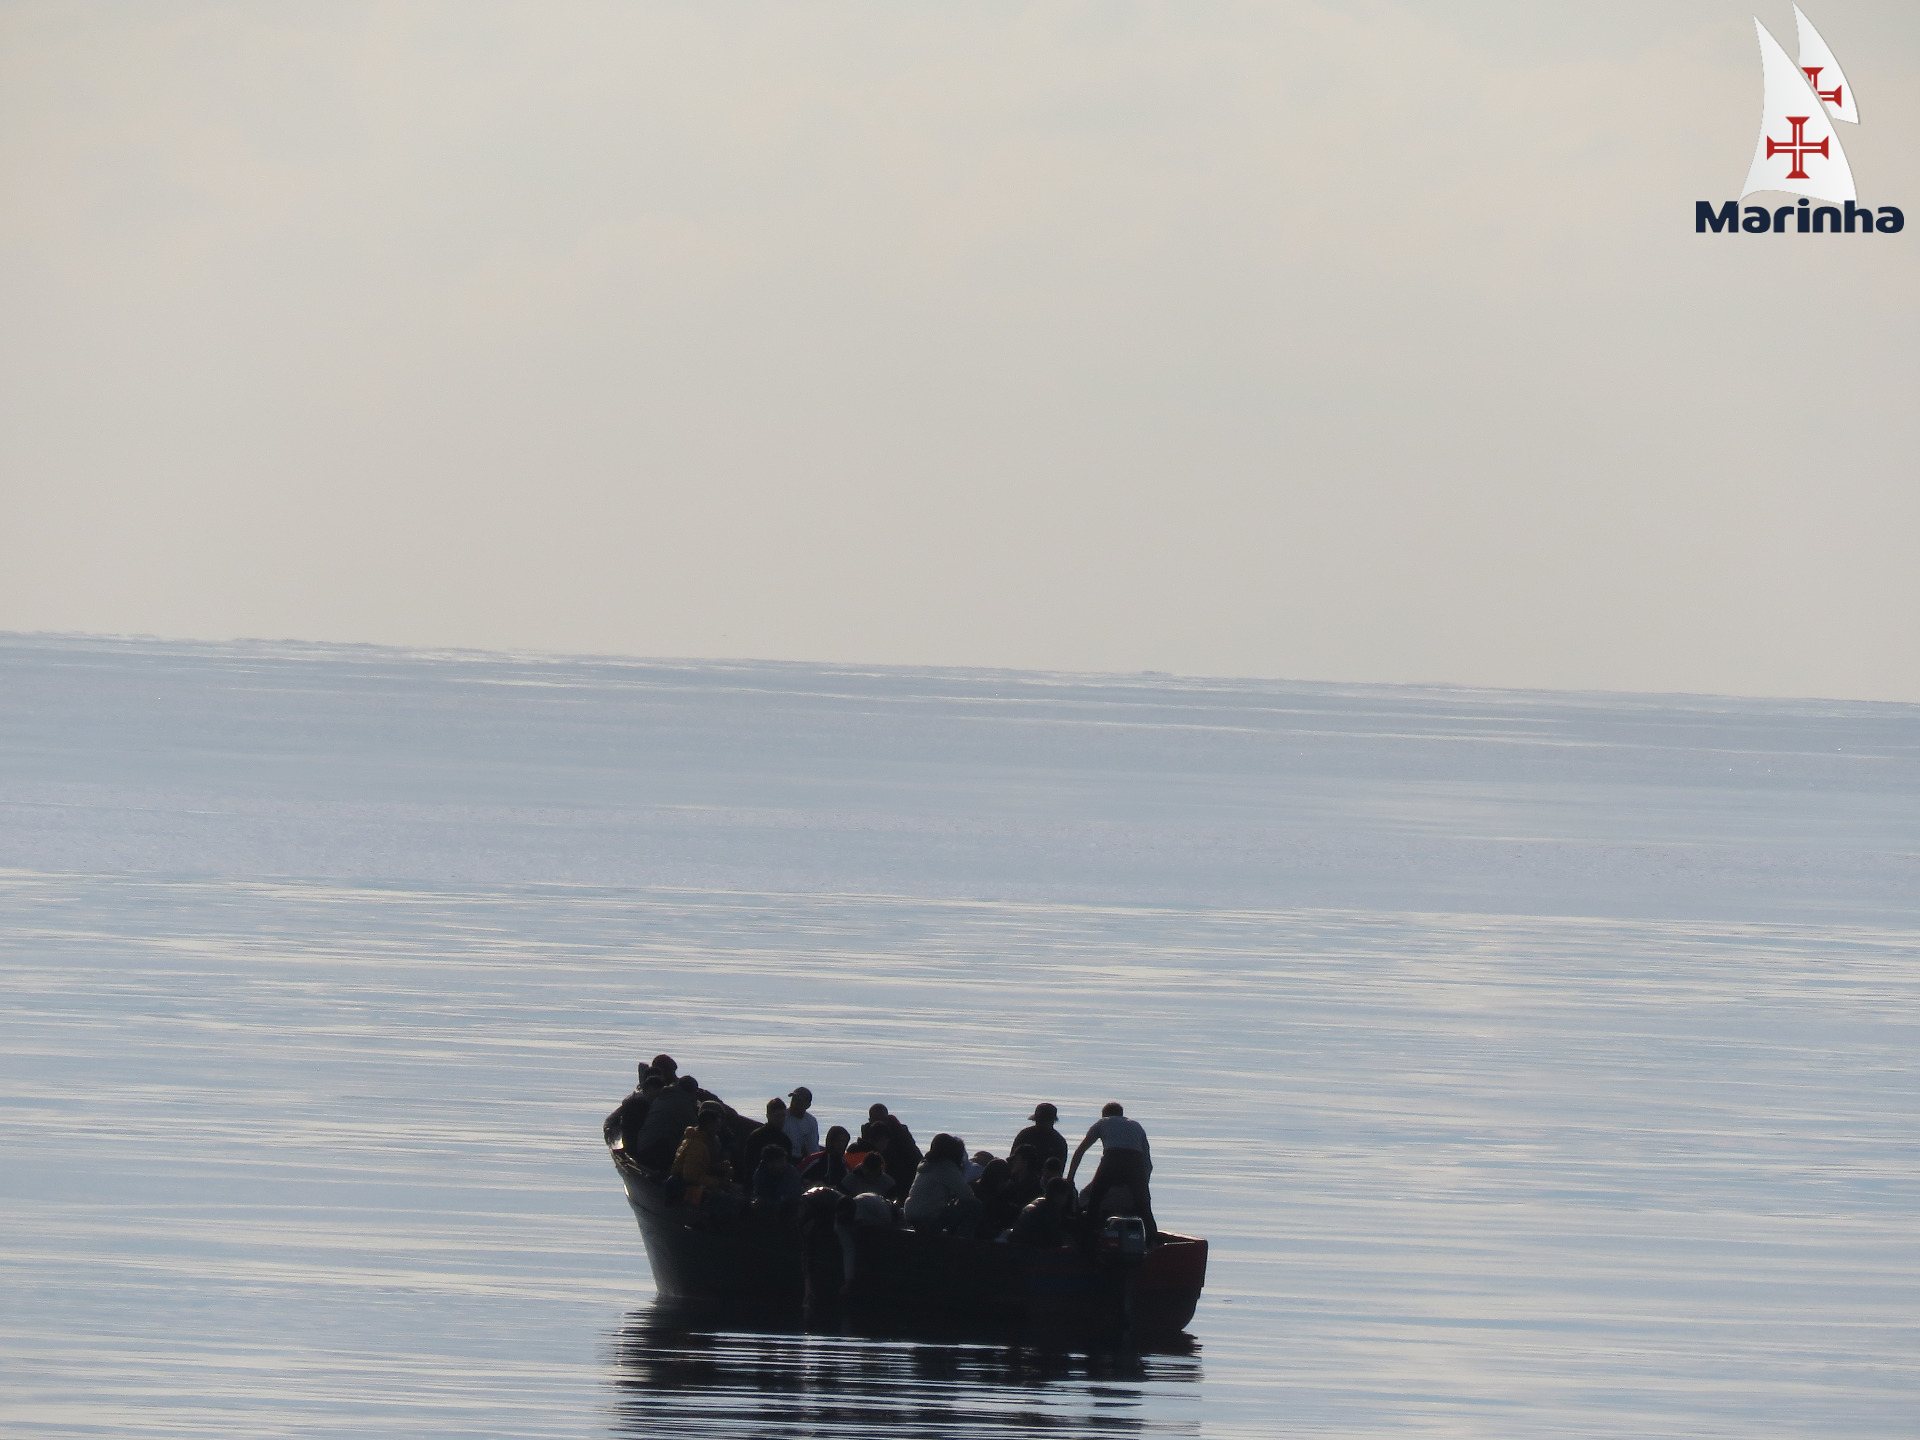 Resgate de 37 migrantes a sul do Algarve no dia 11 de novembro de 2021 pela Marinha Portuguesa. FOTO: Marinha